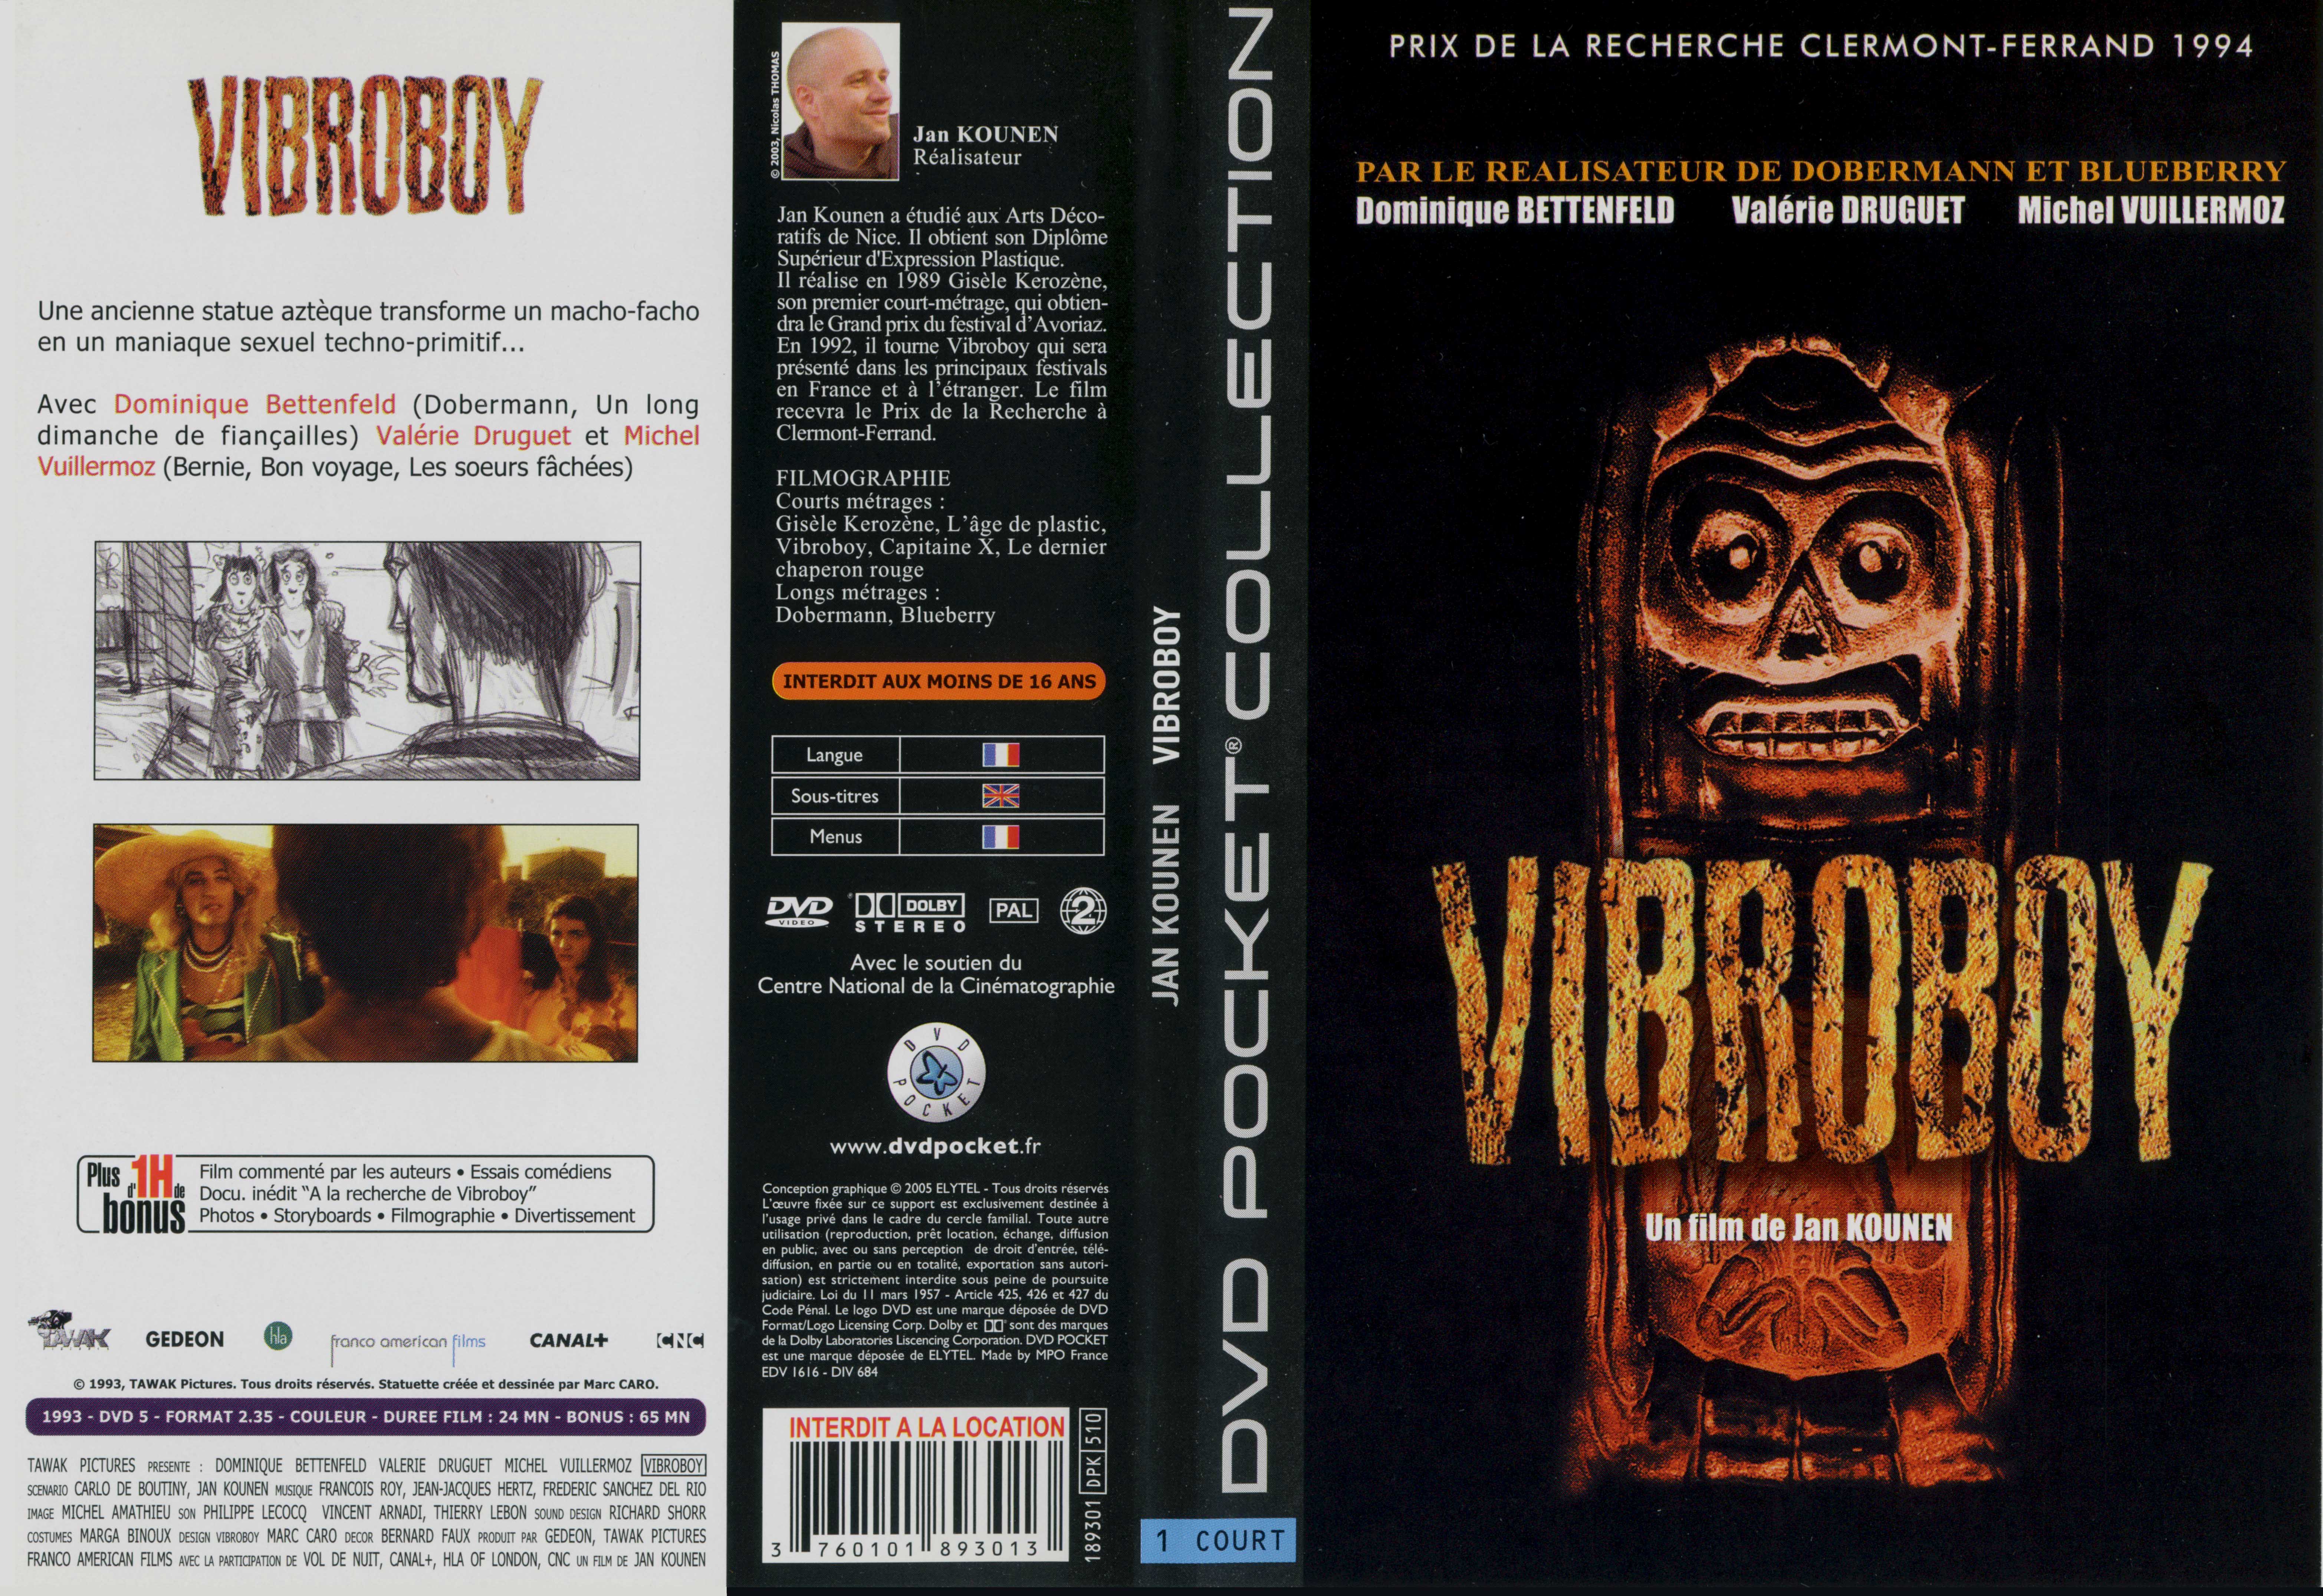 Jaquette DVD Vibroboy